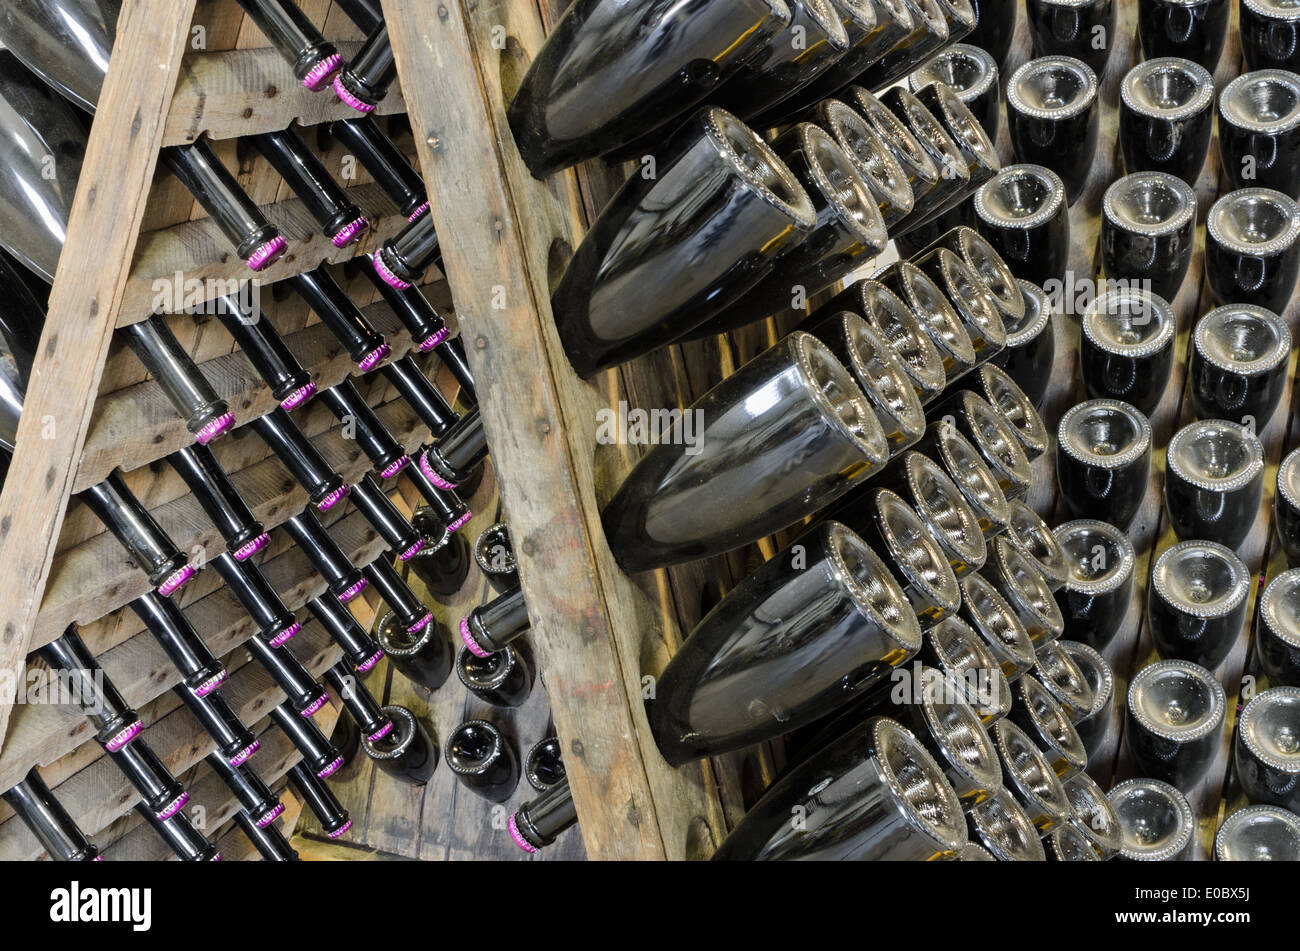 Polverose bottiglie di spumante brut su rack in legno in cantina vault Foto Stock